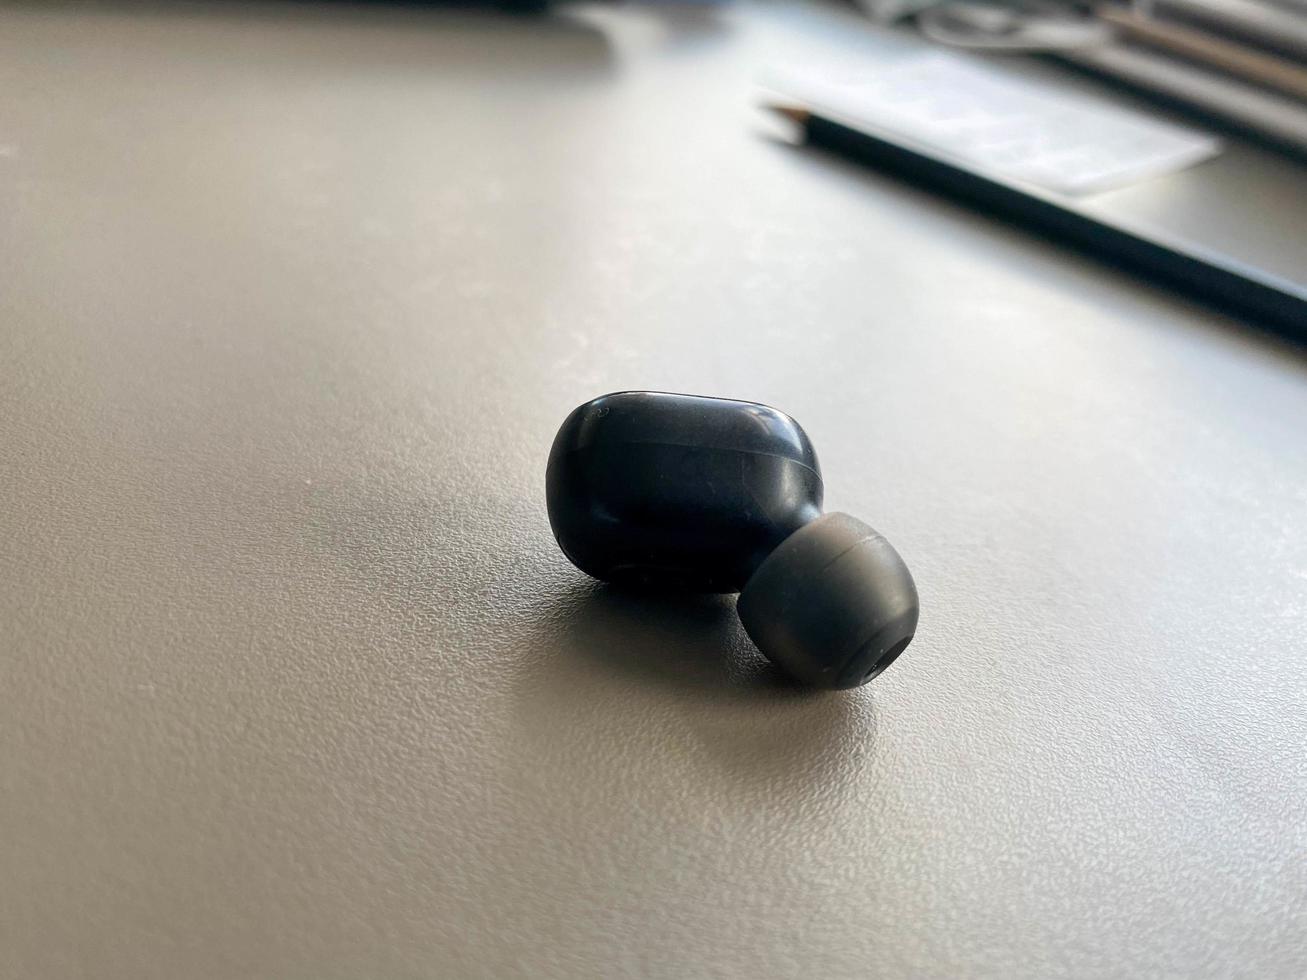 un petit écouteur bluetooth sans fil en plastique noir pour écouter de la musique se trouve sur la table photo